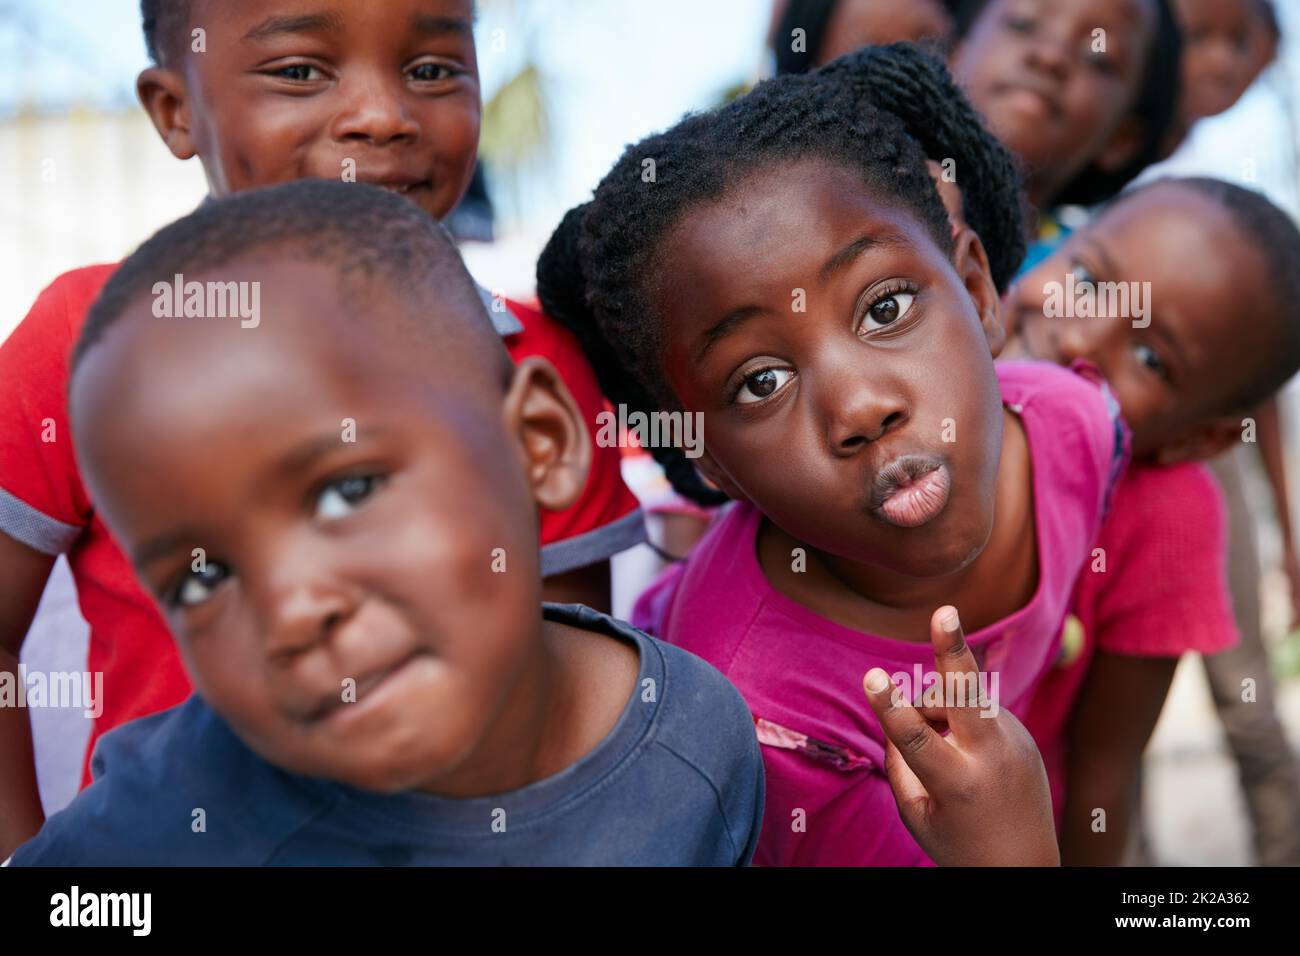 Giovane e pieno di vita. Scatto di bambini in un evento di copertura della comunità. Foto Stock